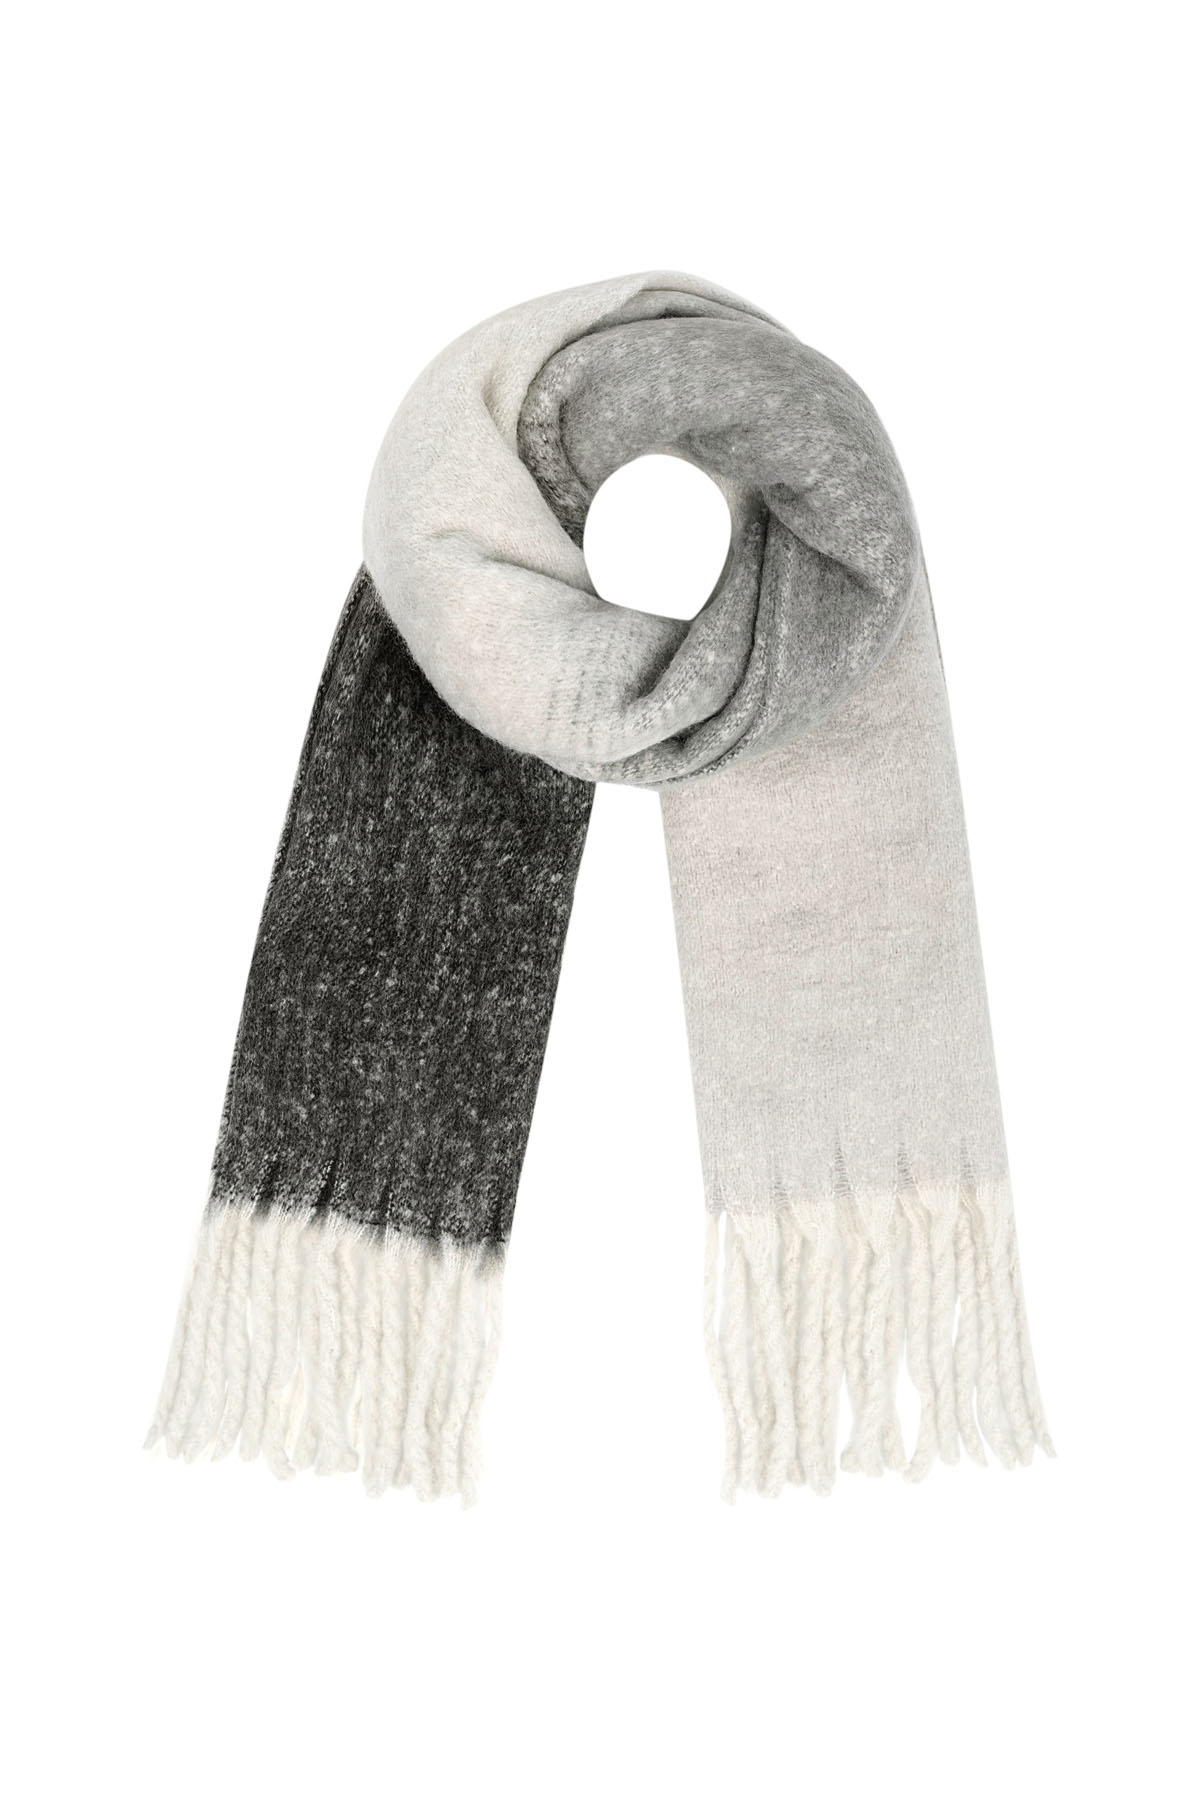 Gekleurde basic sjaal met slierten - zwart wit h5 